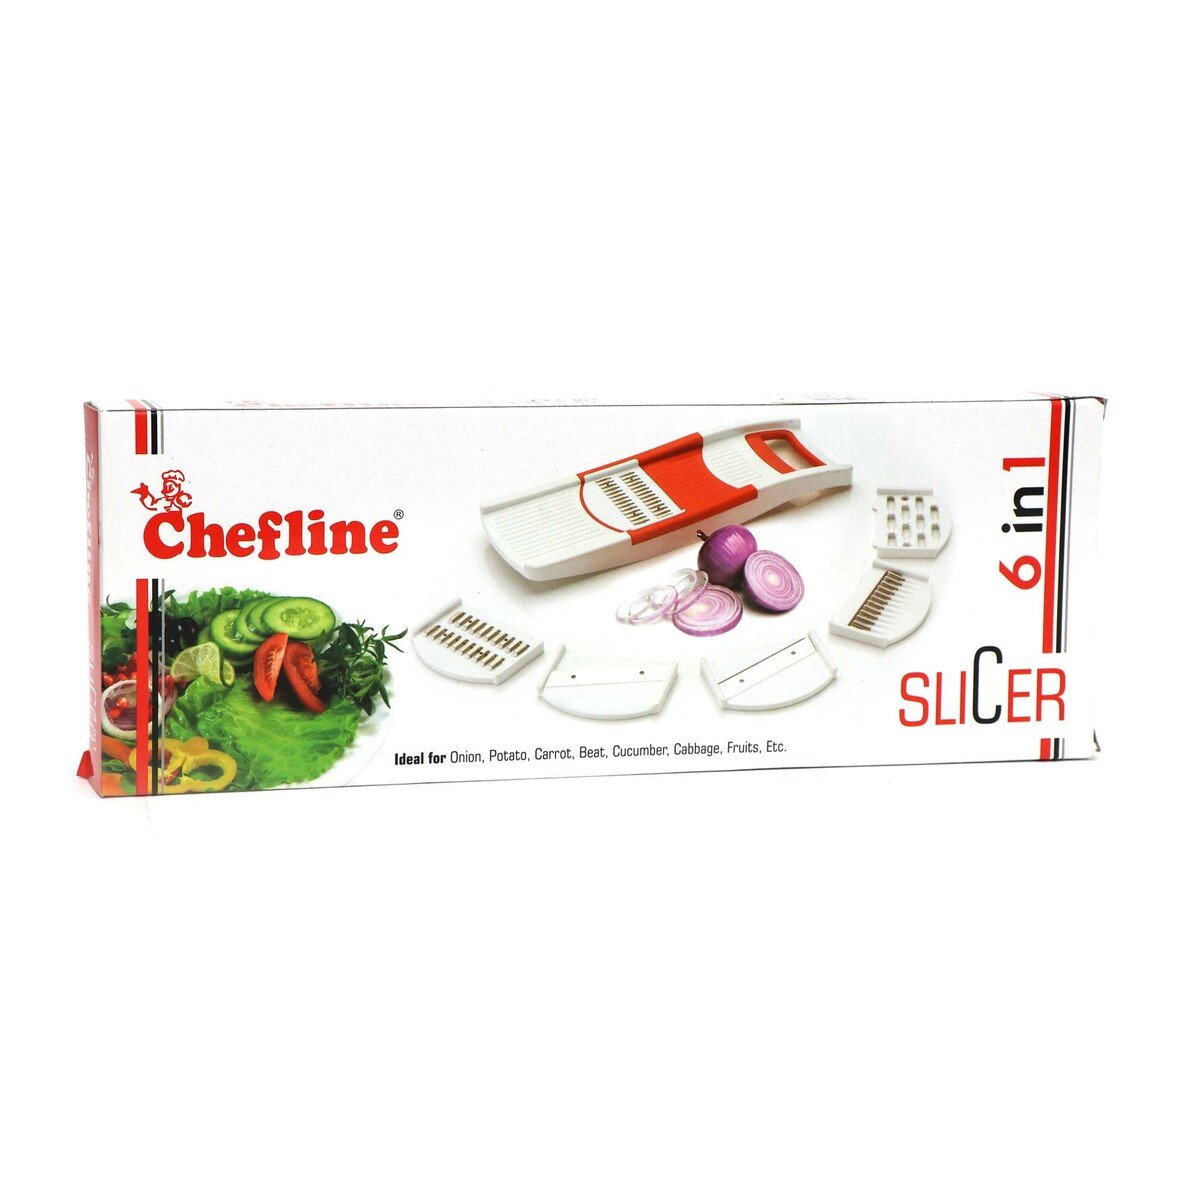 Chefline 6in1 Slicer S61 IND